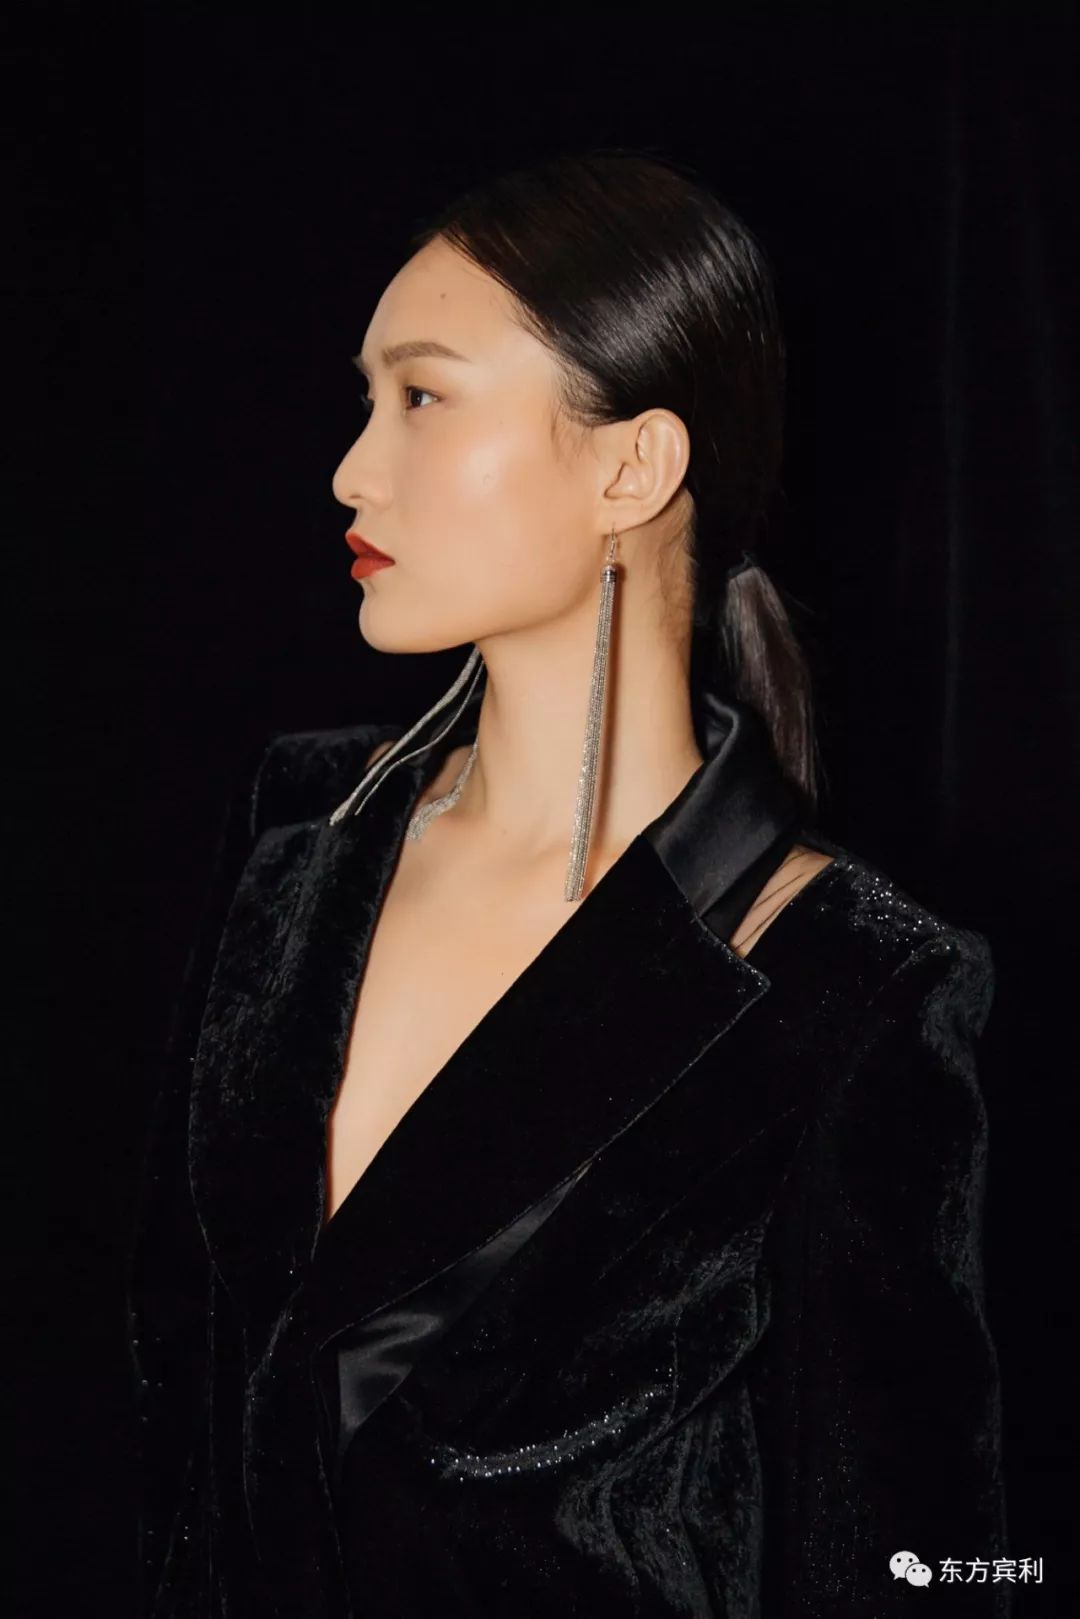 恭喜超模刘春杰加冕时代偶像,收获2018搜狐时尚盛典年度超级女模特奖